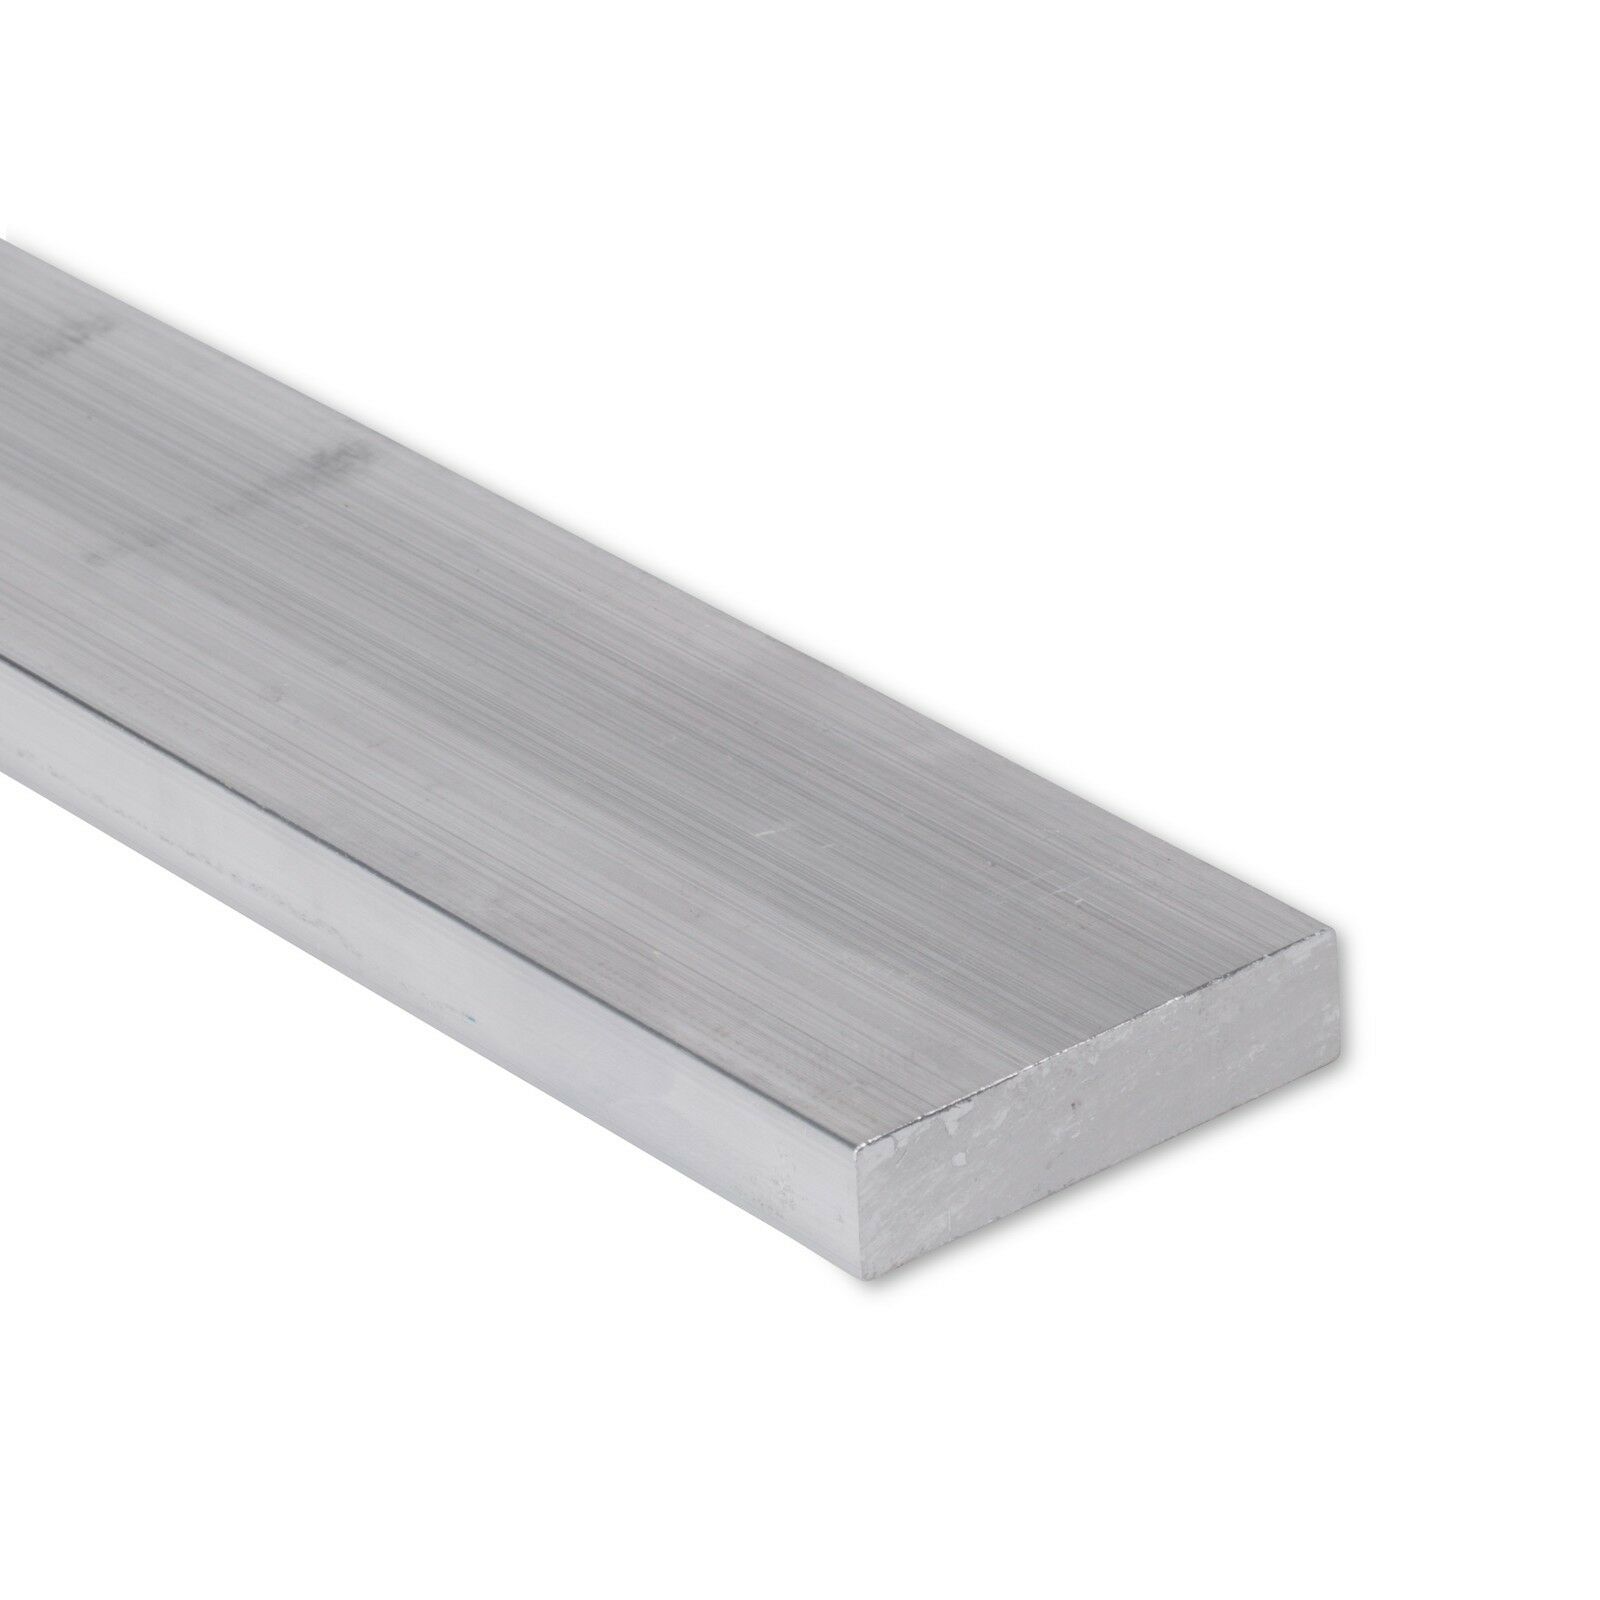 6061 Plate T6511 Mill Stock 1/2" x 1" Aluminum Flat Bar 8" Length 0.5"